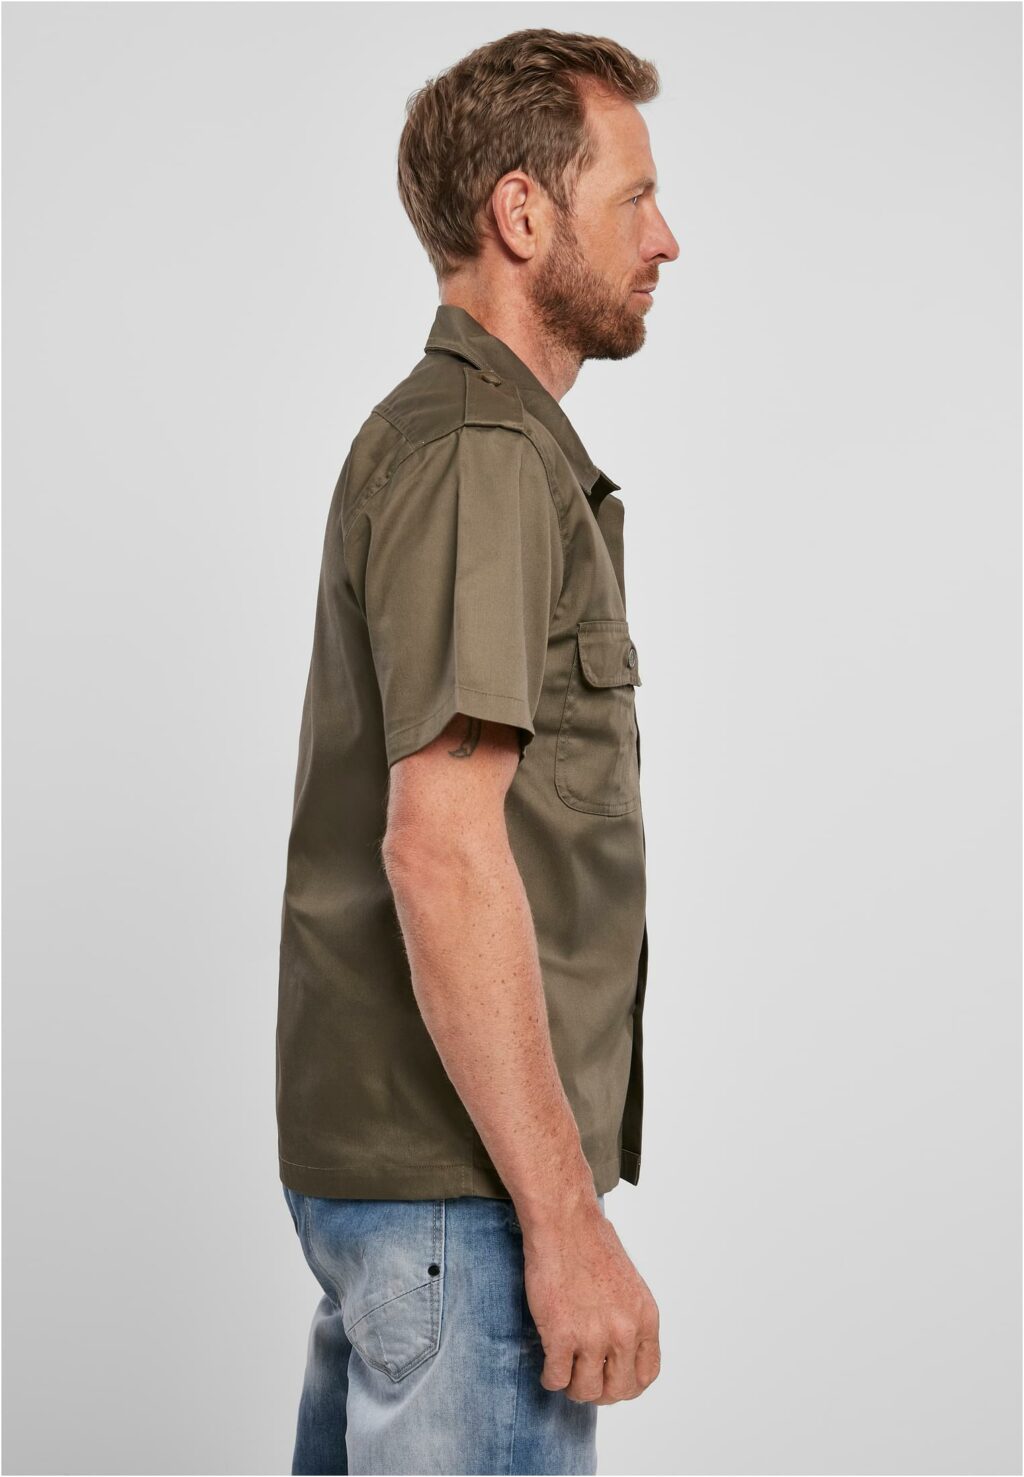 Brandit Short Sleeves US Shirt olive BD4101